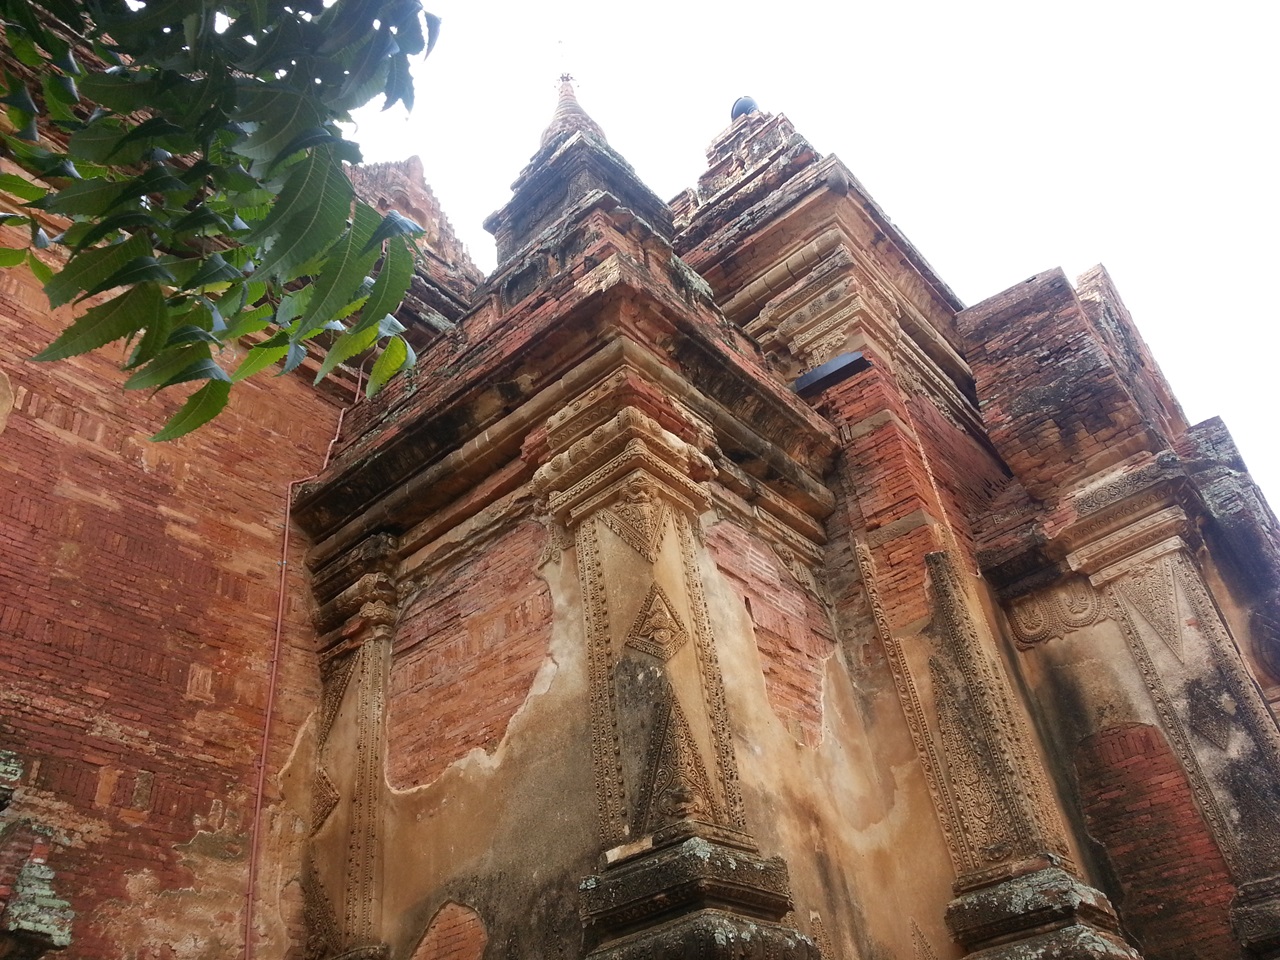 아열대의 뙤약볕 대지 위에 세워진 파고다의 벽돌 한 장마다 미얀마 조상들의 피와땀이 배어 있다.